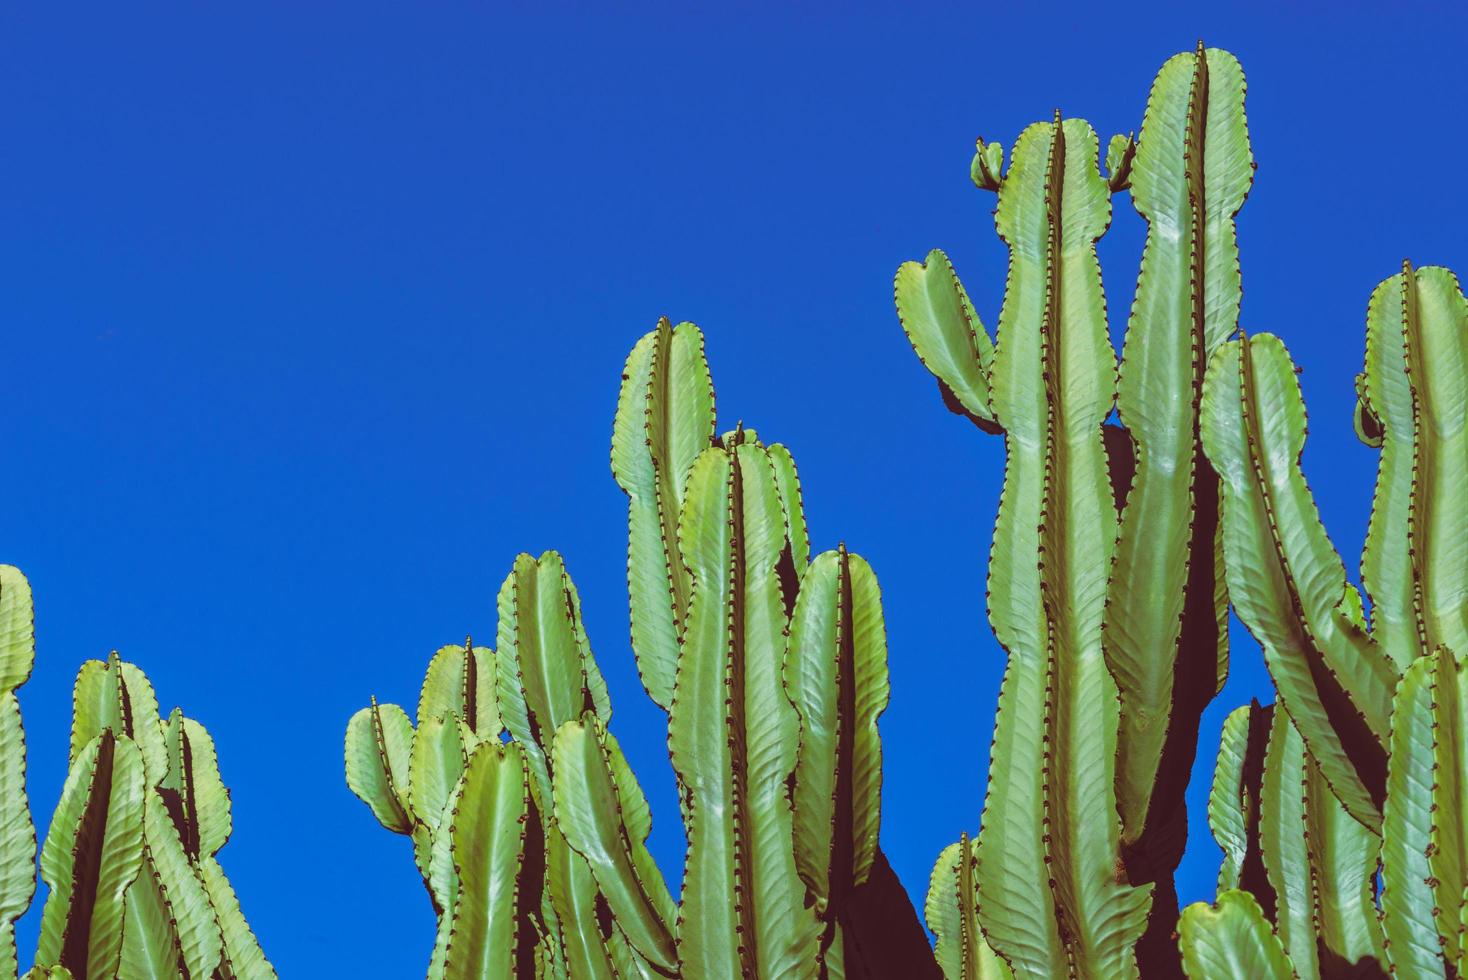 naturaleza de fondo. cactus cereus peruvianus. fondo de cielo azul foto